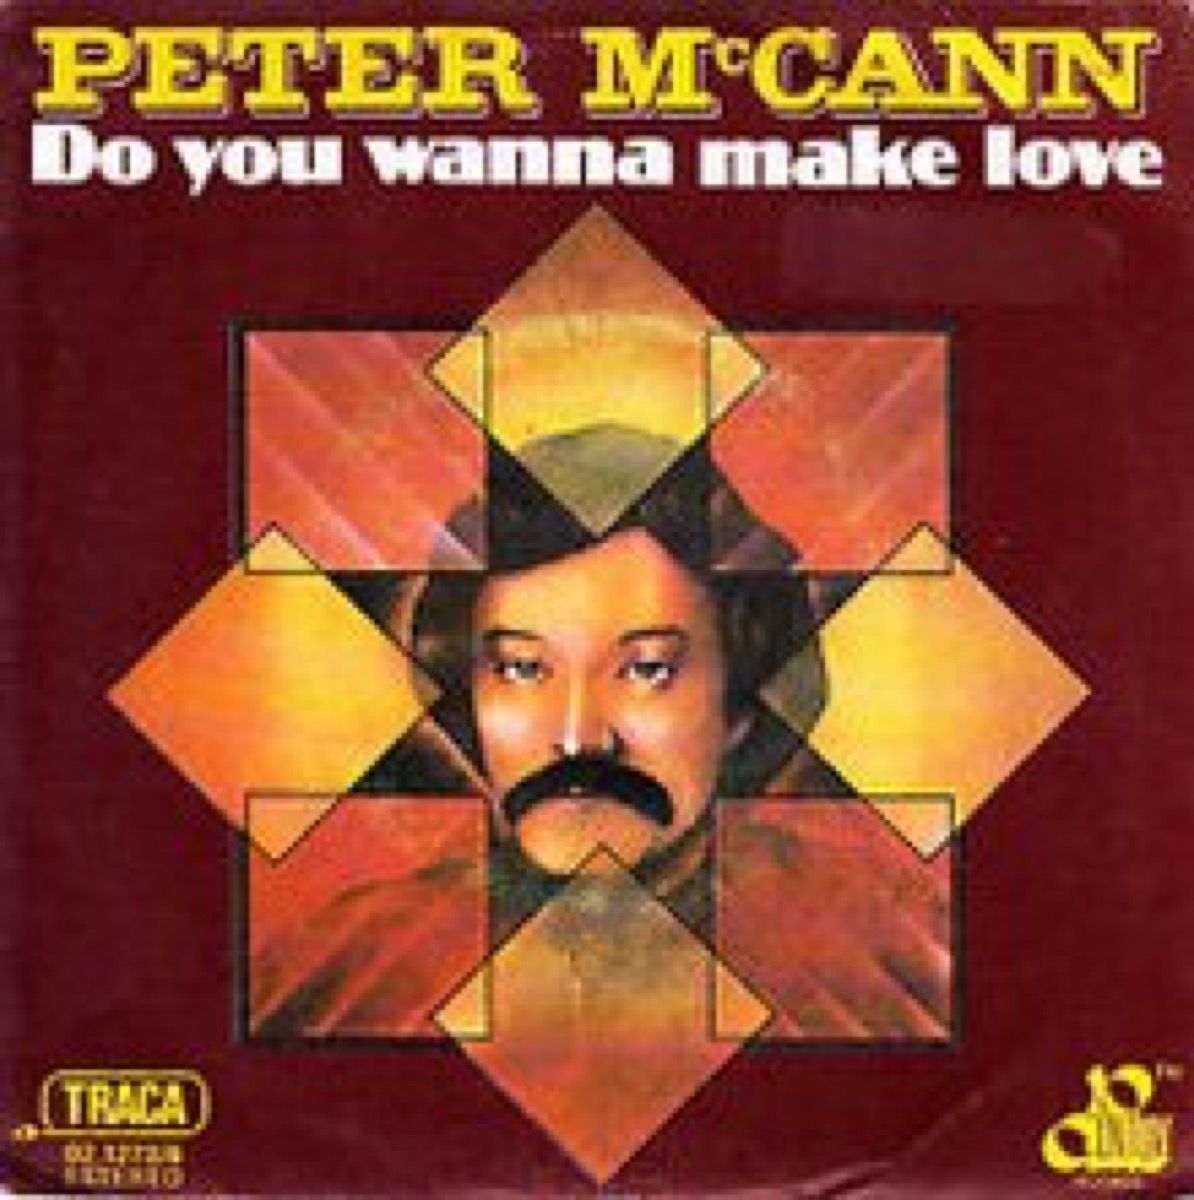 Peter McCann, haluaisitko rakastella, 1970-luku, yksi osuma ihme